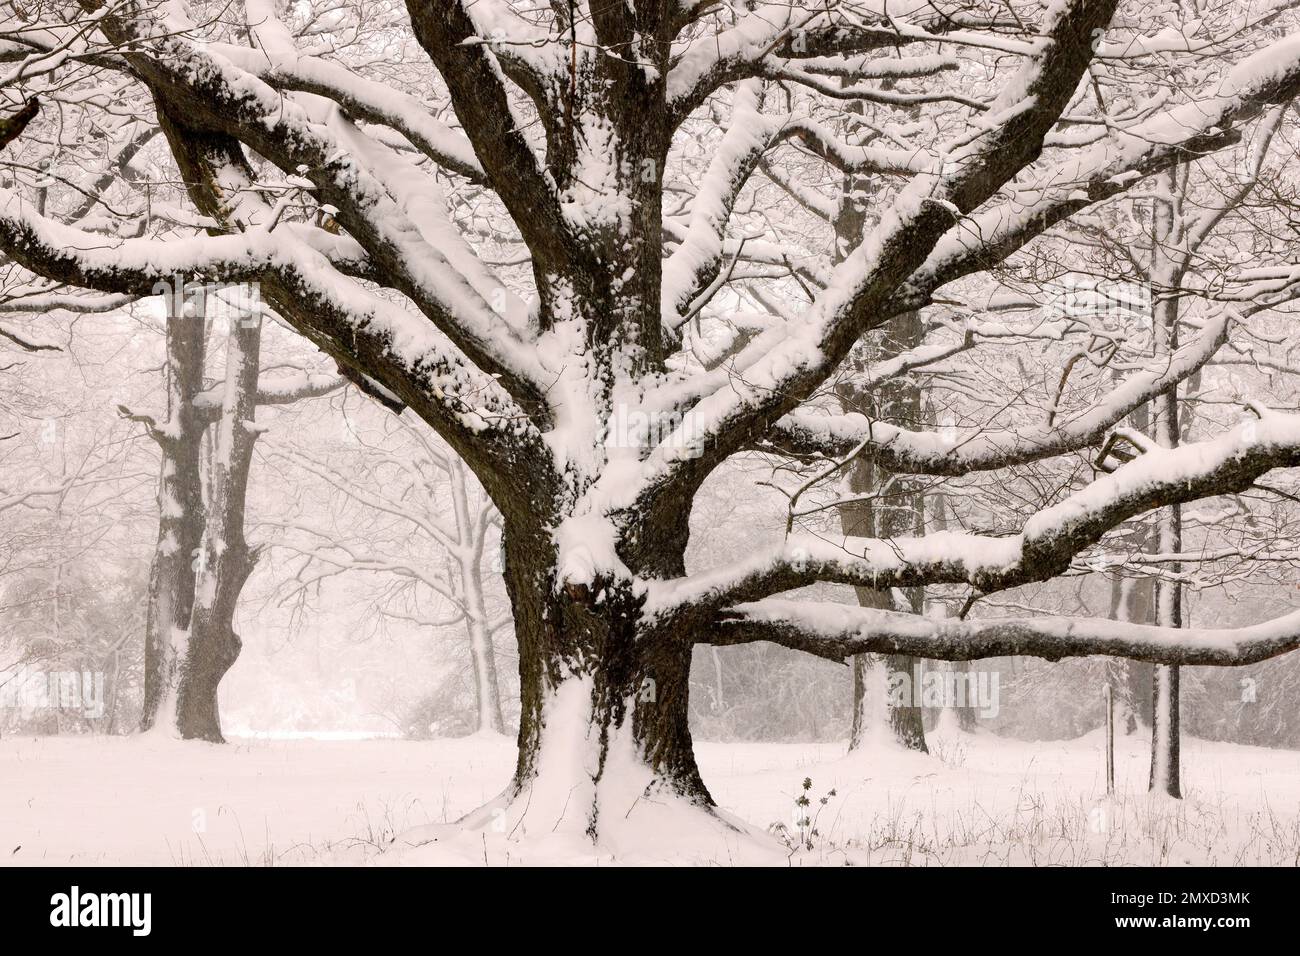 Chêne commun, chêne pédonculé, chêne anglais (Quercus robur, Quercus pedunculata), couvert de neige, chêne monumental, Allemagne Banque D'Images